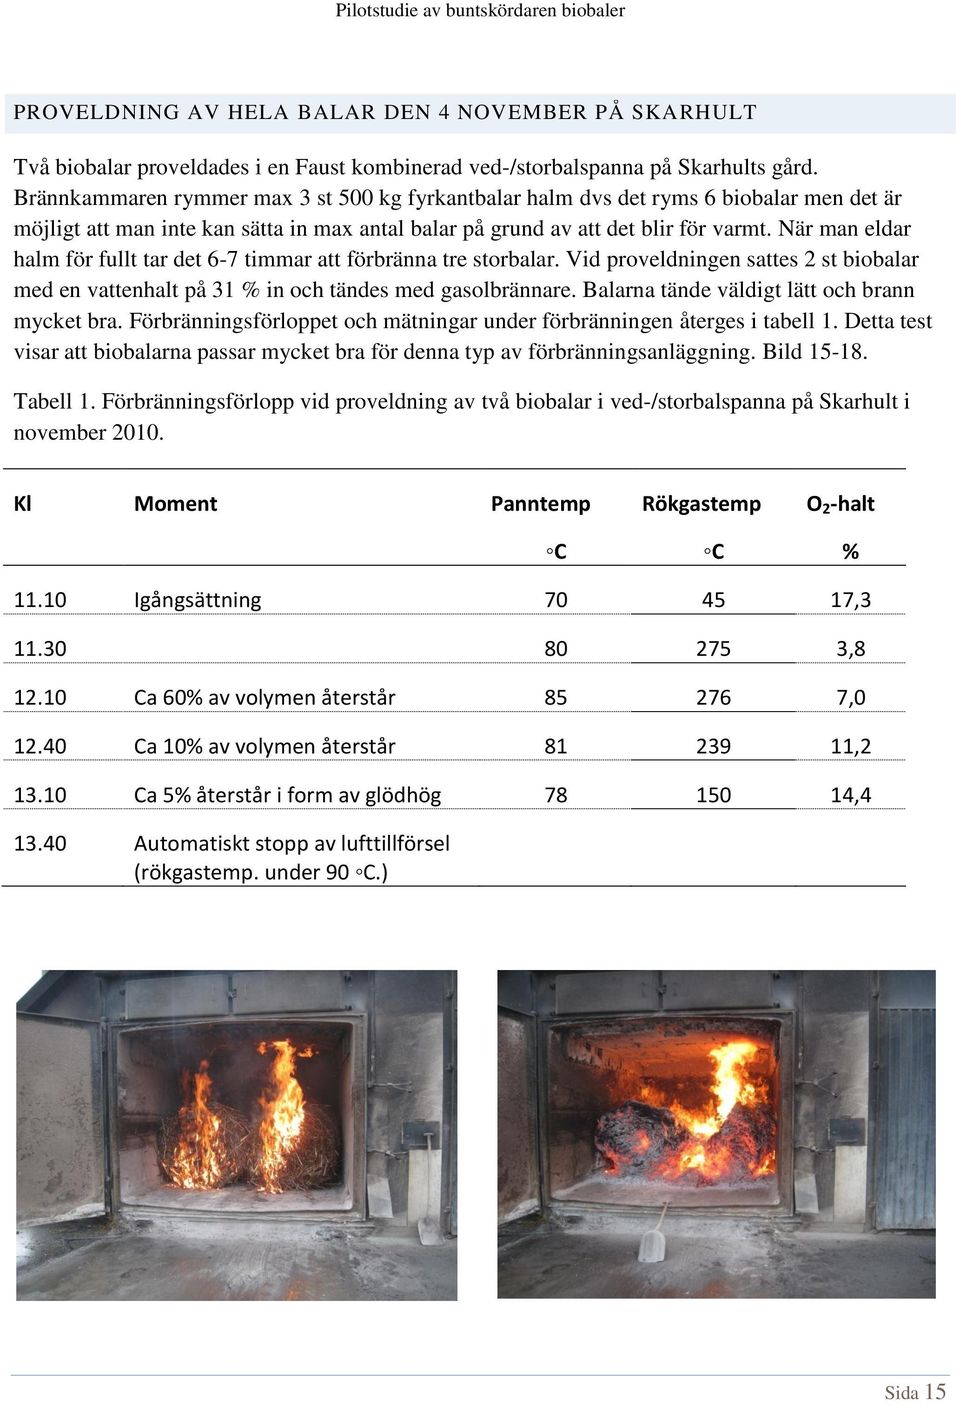 När man eldar halm för fullt tar det 6-7 timmar att förbränna tre storbalar. Vid proveldningen sattes 2 st biobalar med en vattenhalt på 31 % in och tändes med gasolbrännare.